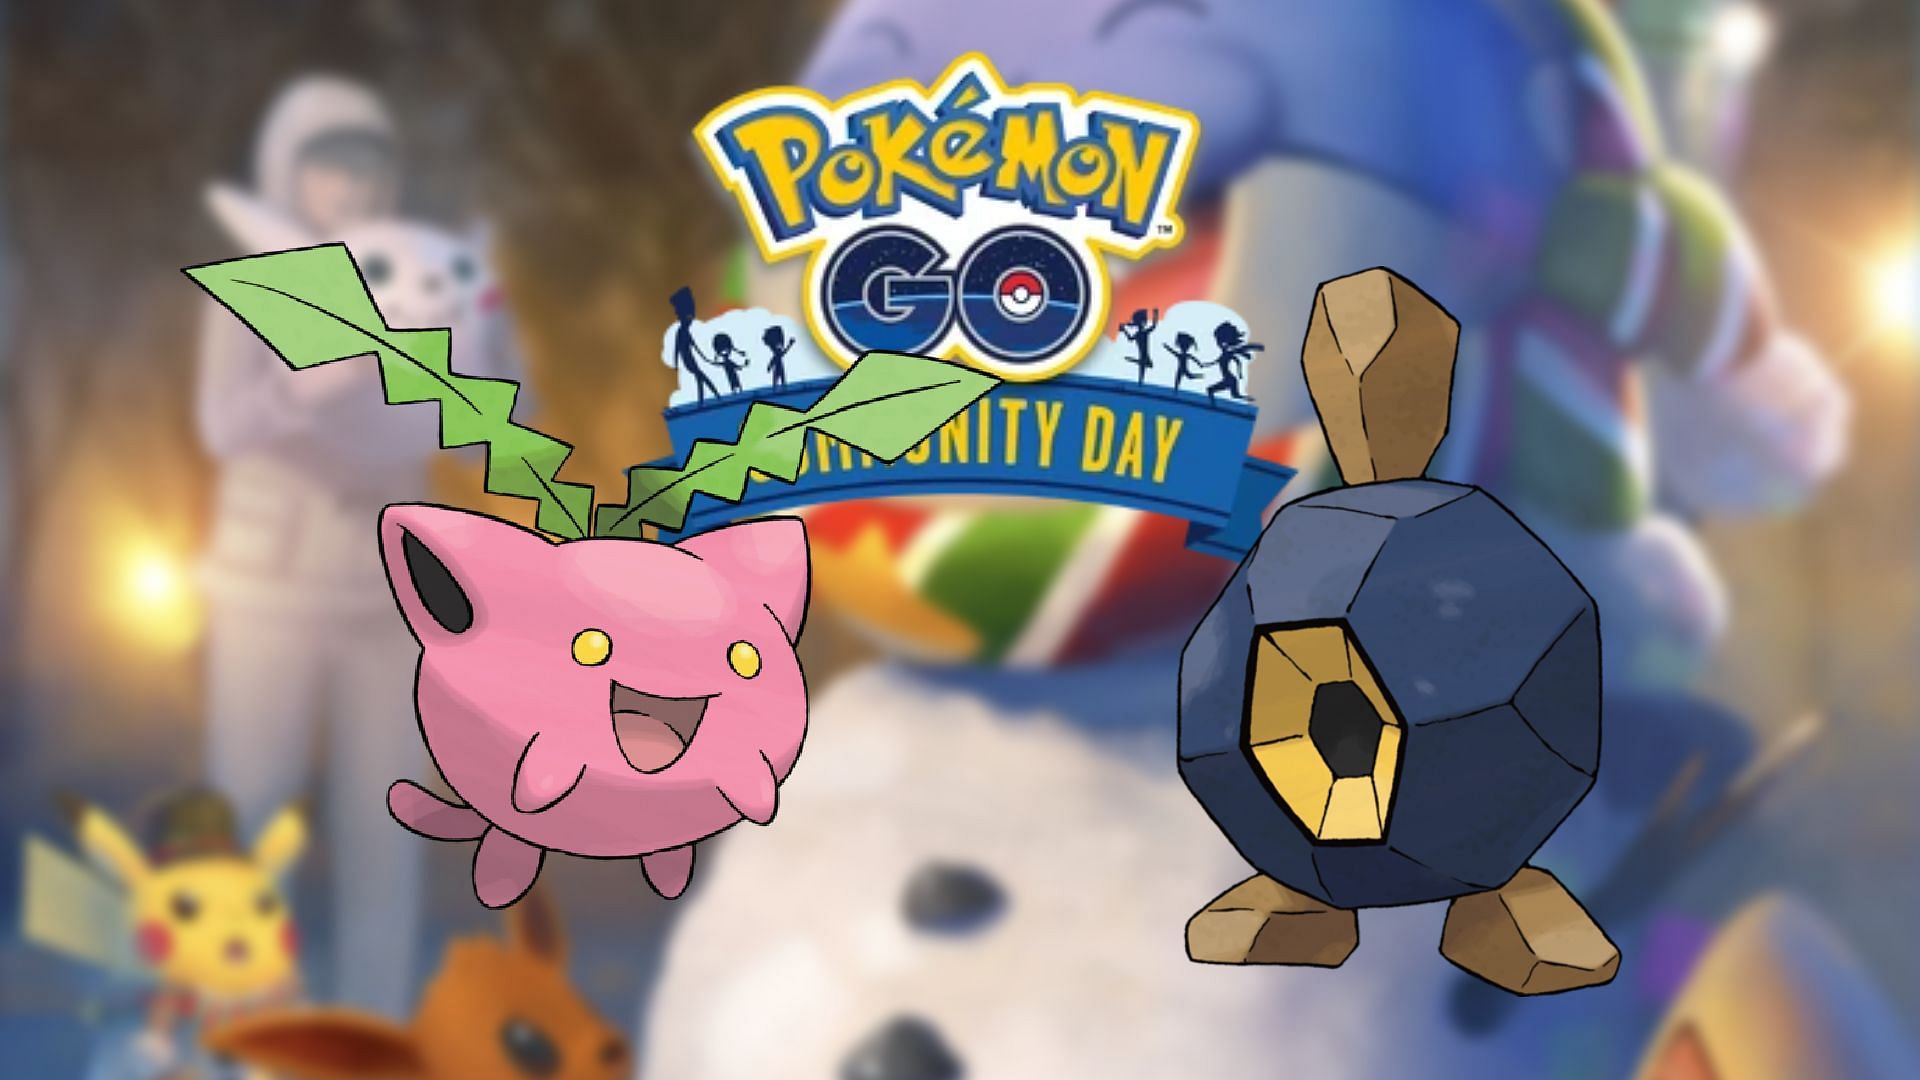 Pokemon-GO-December-events-details-768x879 - MEmu Blog